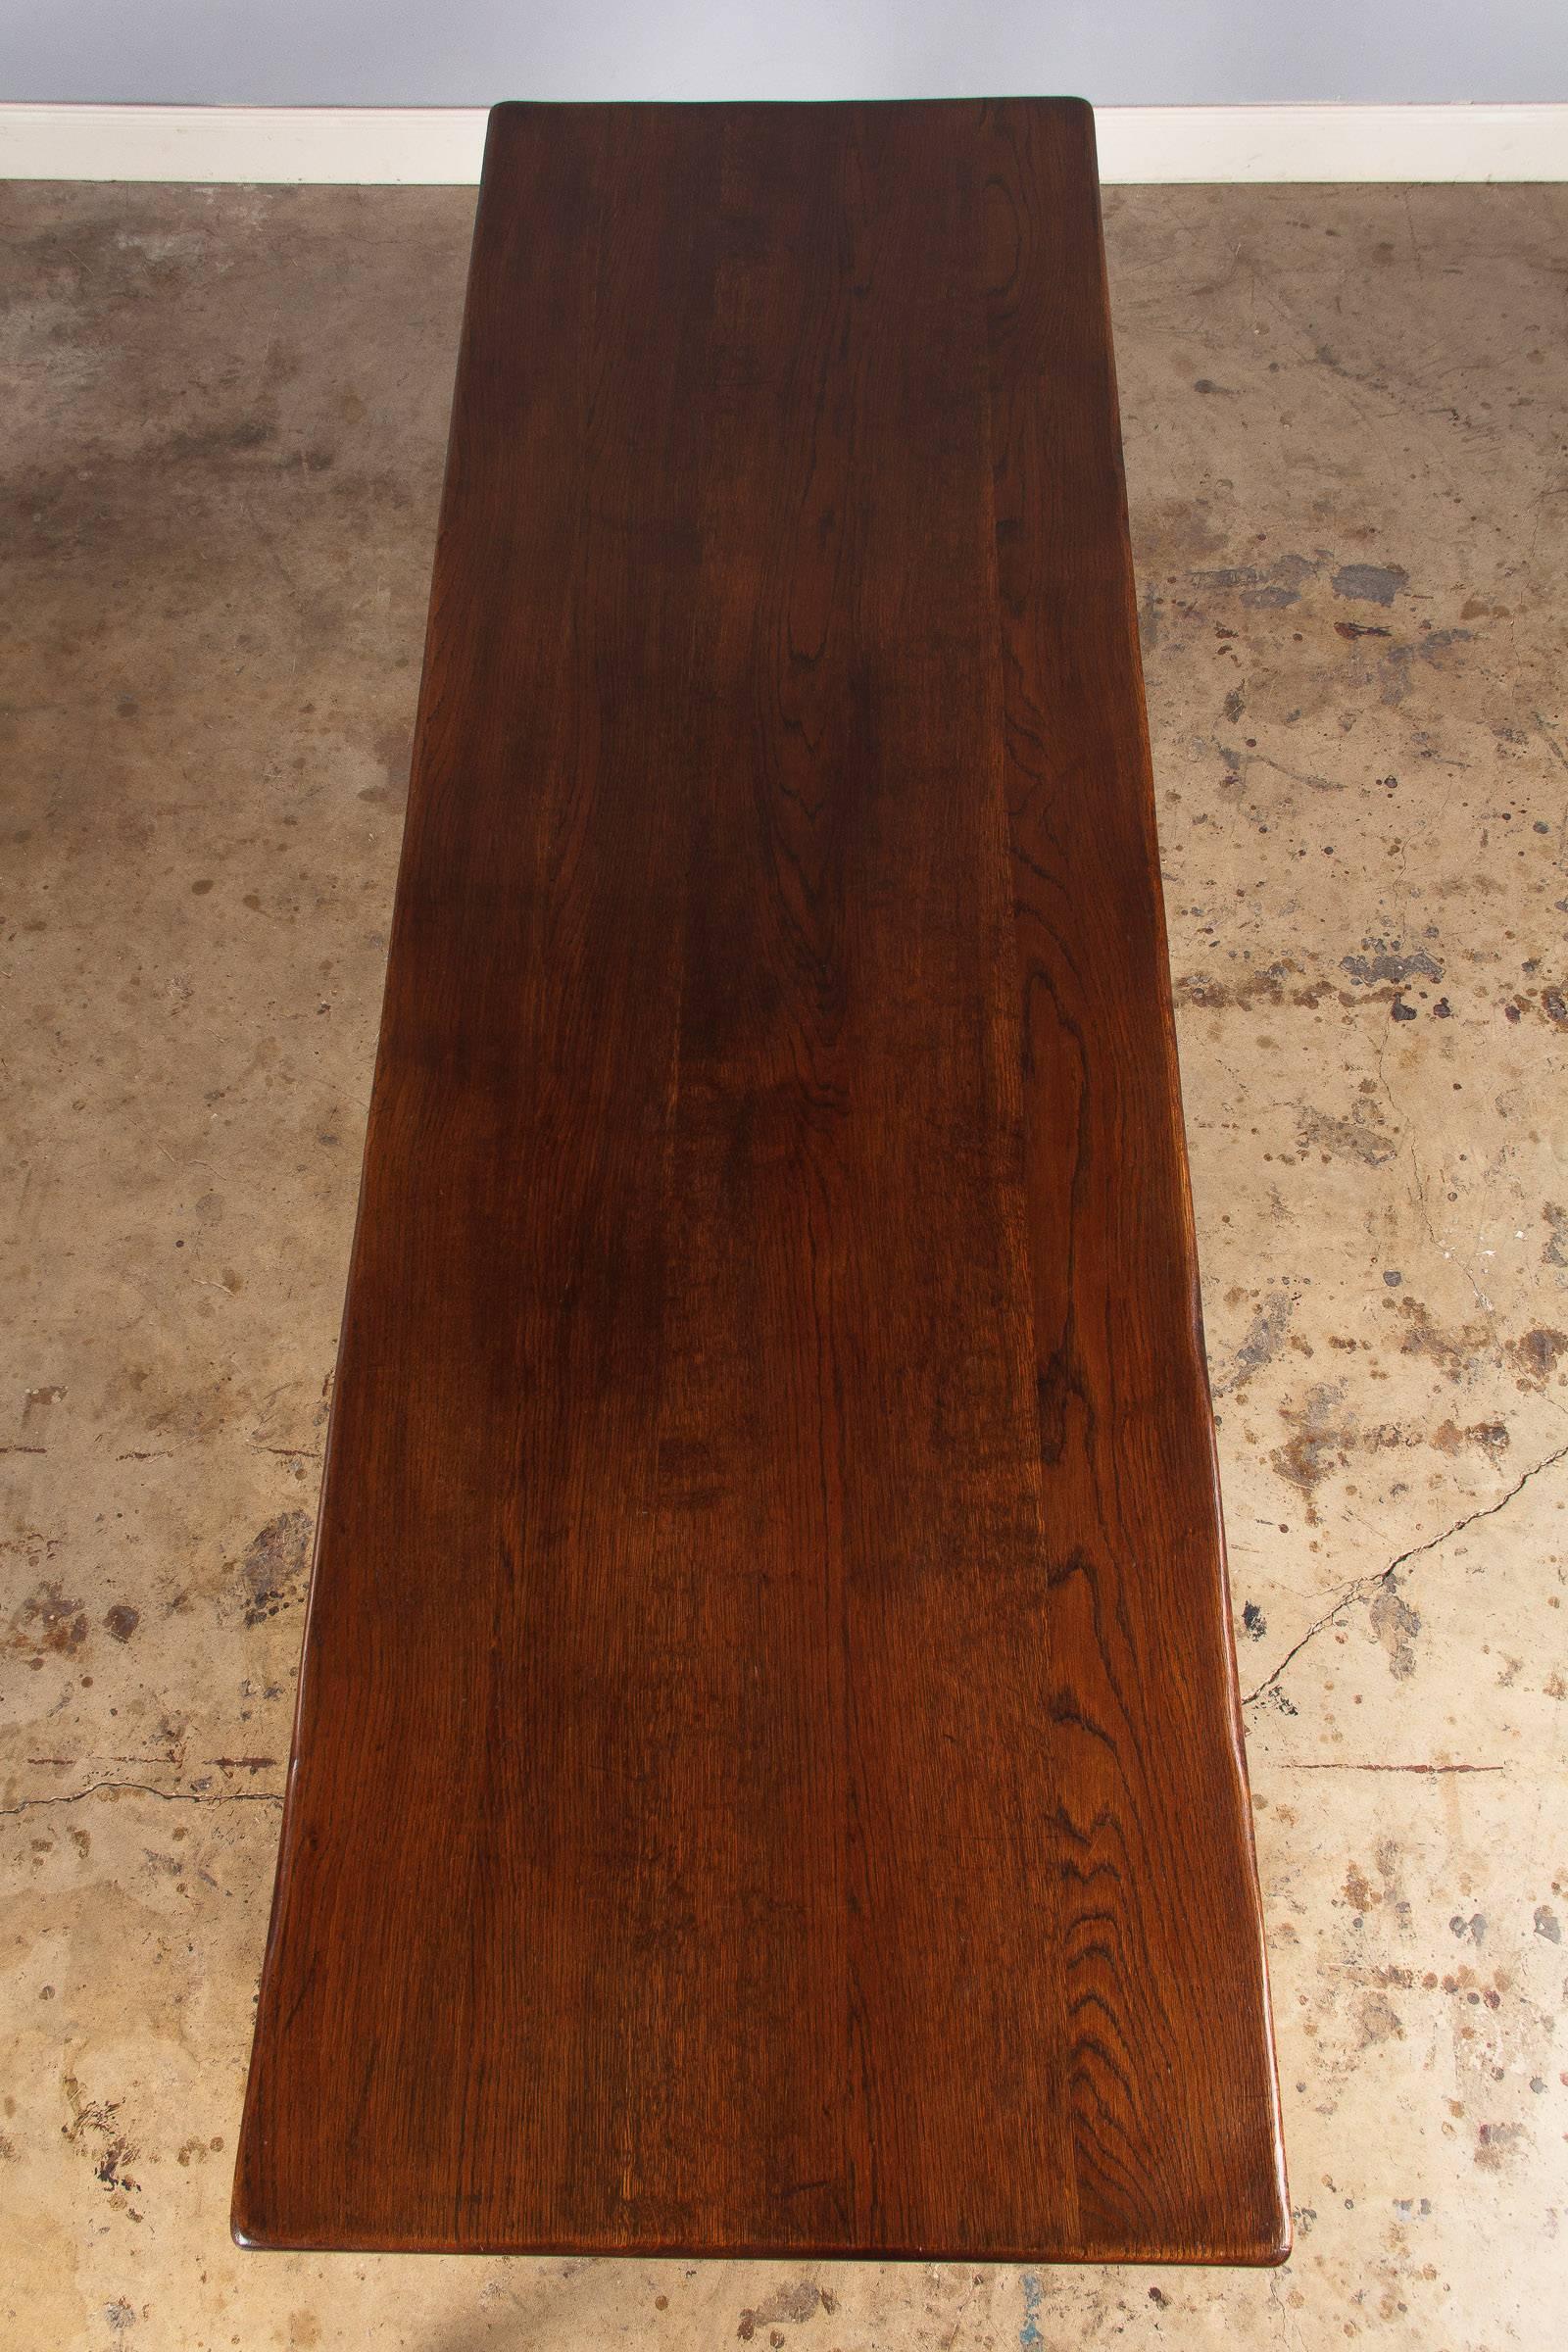 Iron Mid-Century Oak Trestle Table from Spain